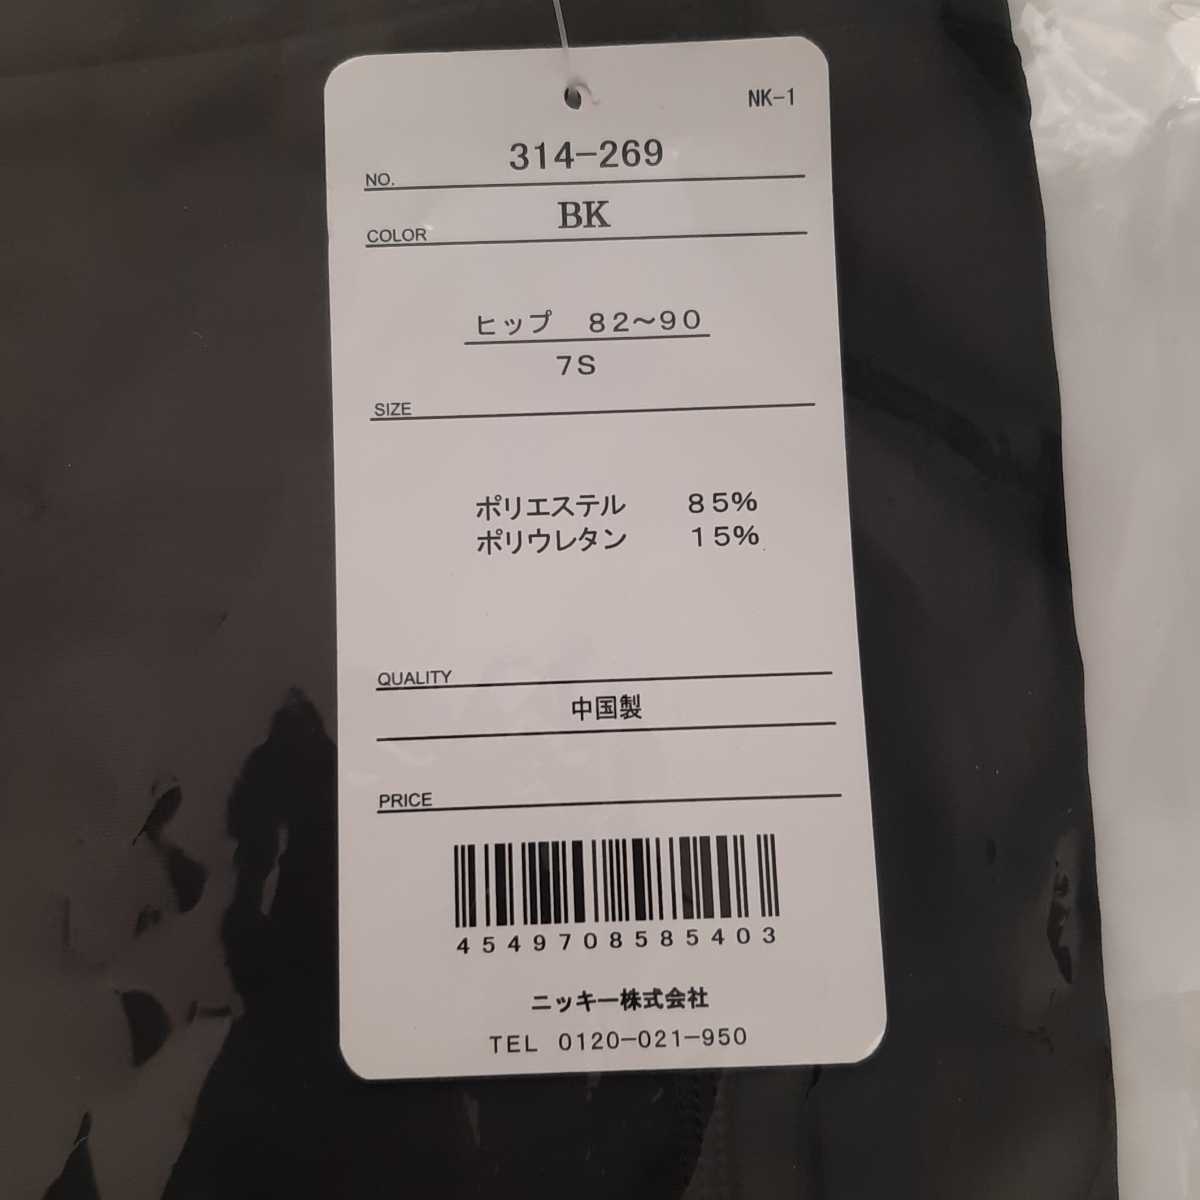 7 номер S размер чёрный новый товар FILA filler низ нога одежда женский фитнес купальный костюм йога тренировка бесплатная доставка обычная цена 3190 иен 